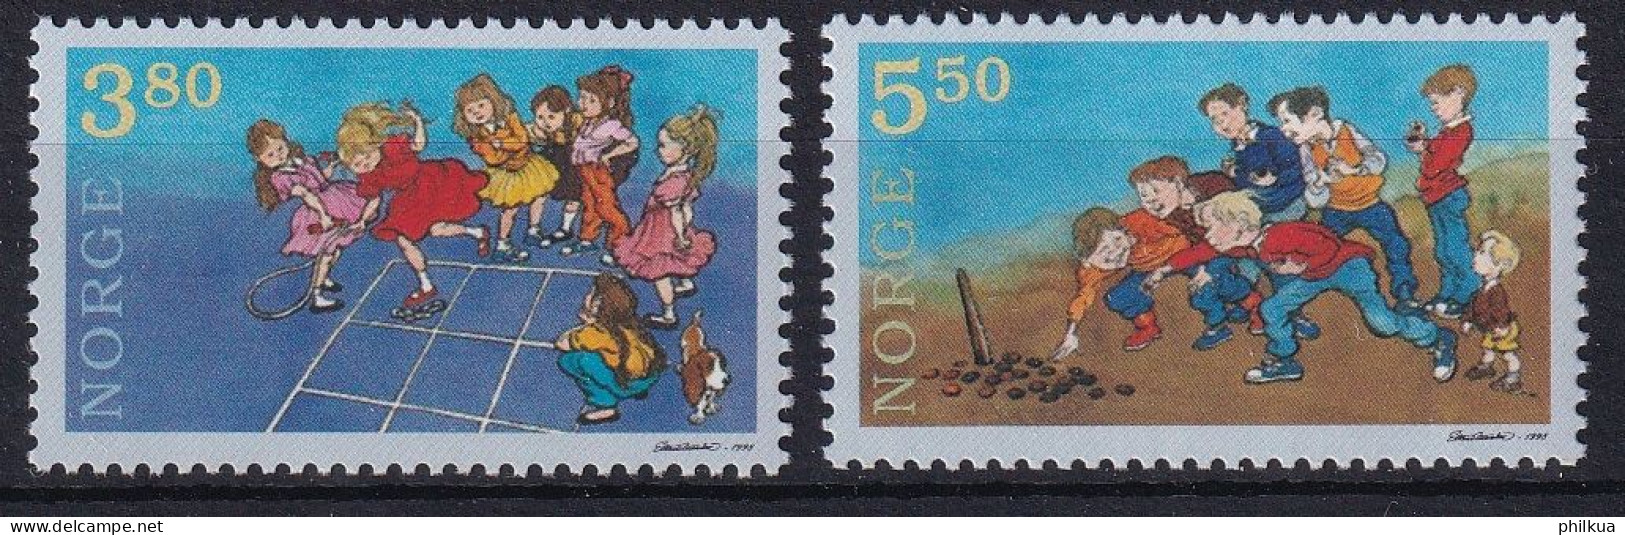 MiNr. 1290 - 1291 Norwegen       1998, 18. Sept. Kinderspiele - Postfrisch/**/MNH - Nuovi